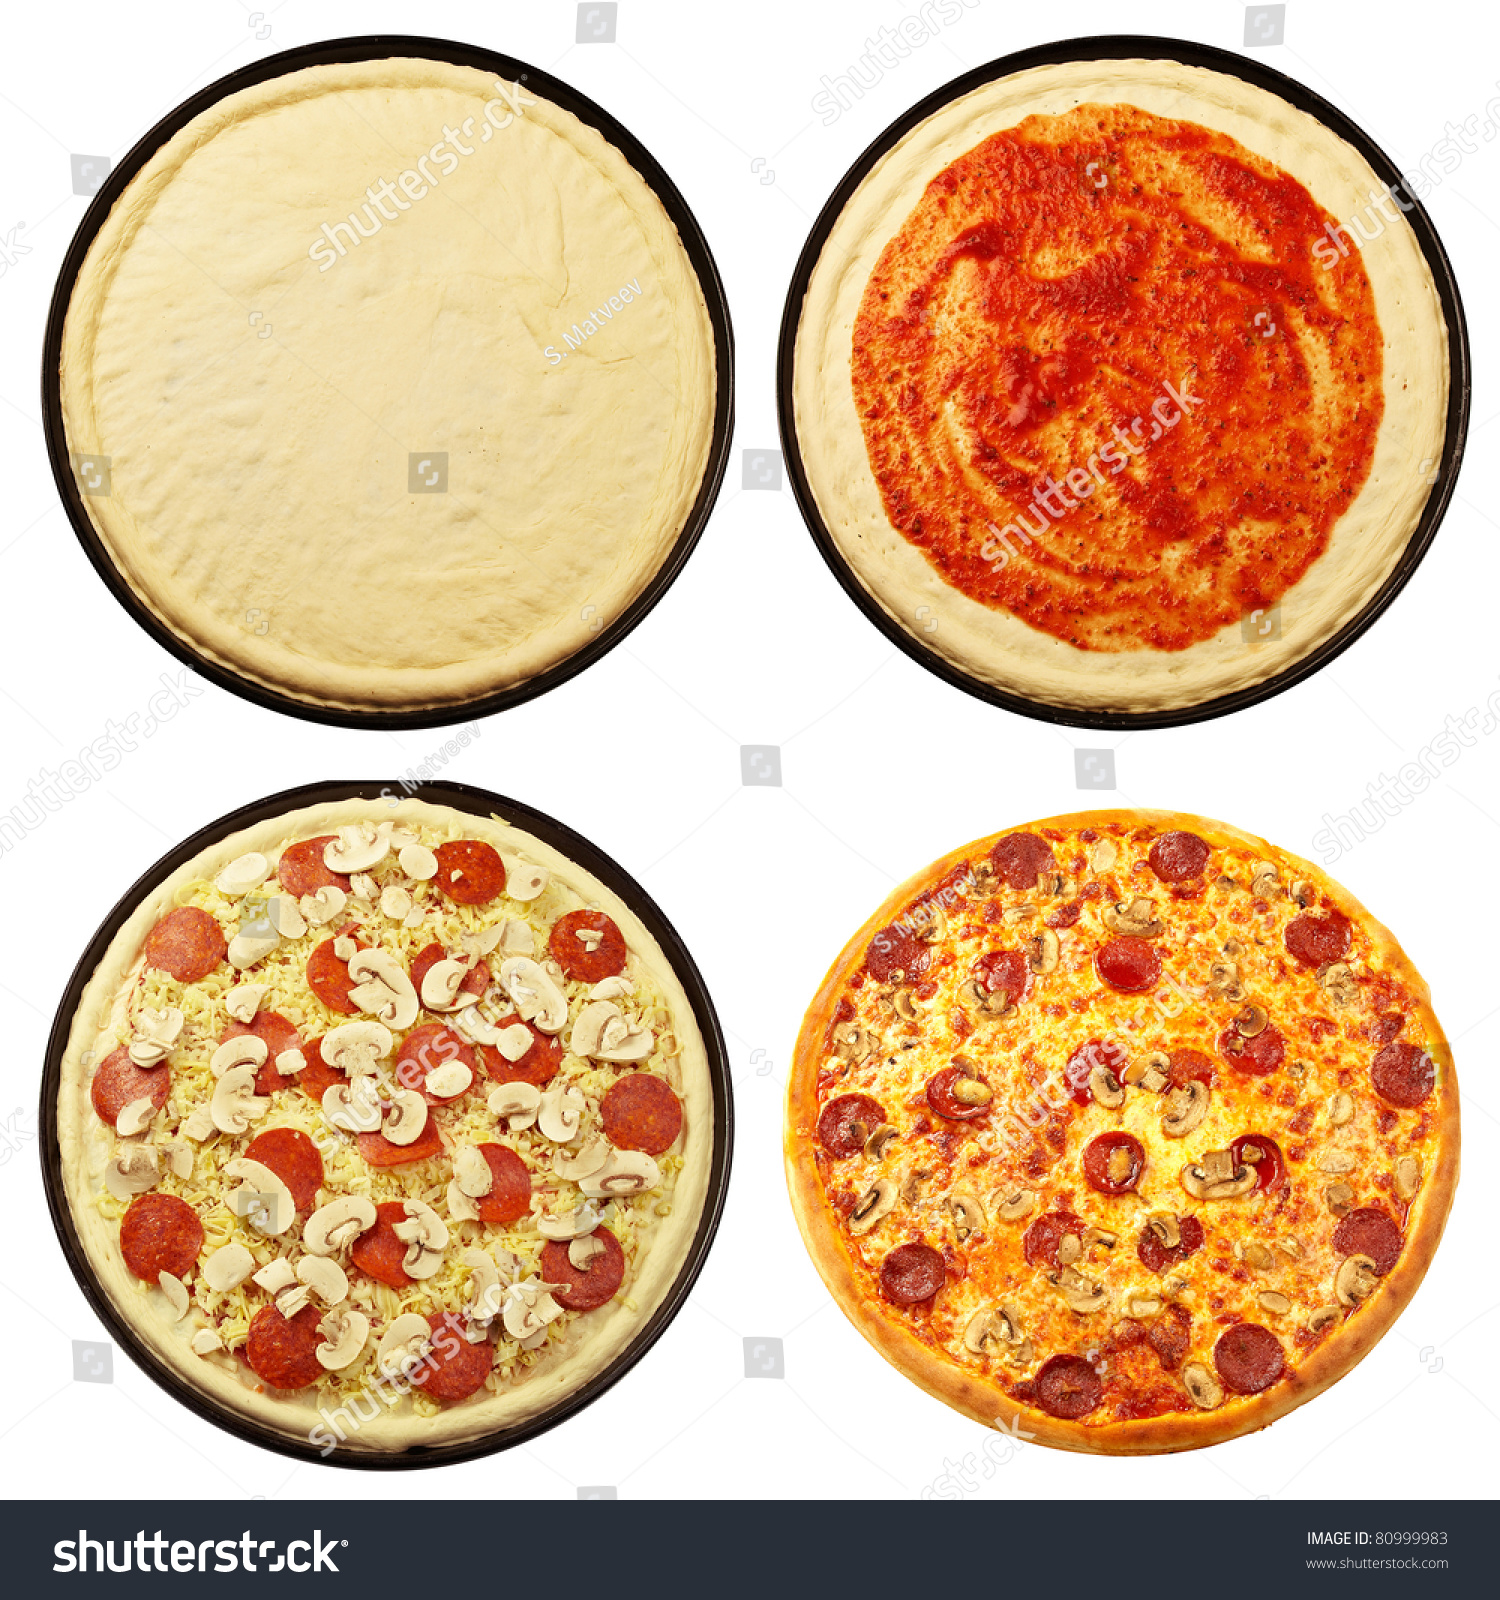 слои начинки в пицце (120) фото